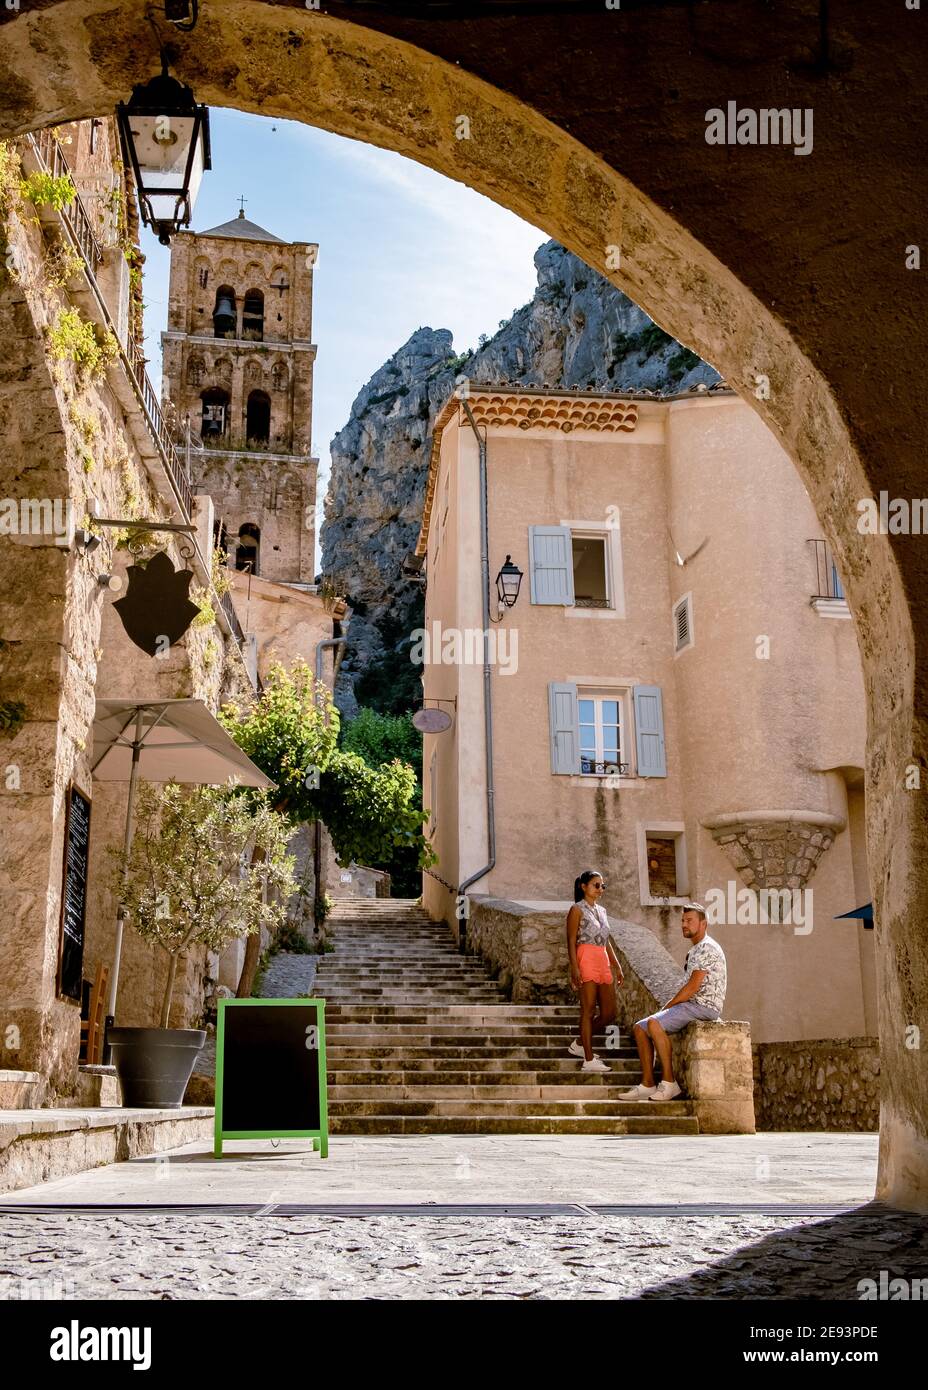 Das Dorf Moustiers-Sainte-Marie, Provence, Frankreich Europa, ein buntes Dorf in der Provence Frankreich, Paar im Urlaub in Frankreich, Männer und Frauen mittleren Alters besuchen Moustiers-Sainte-Marie Stockfoto